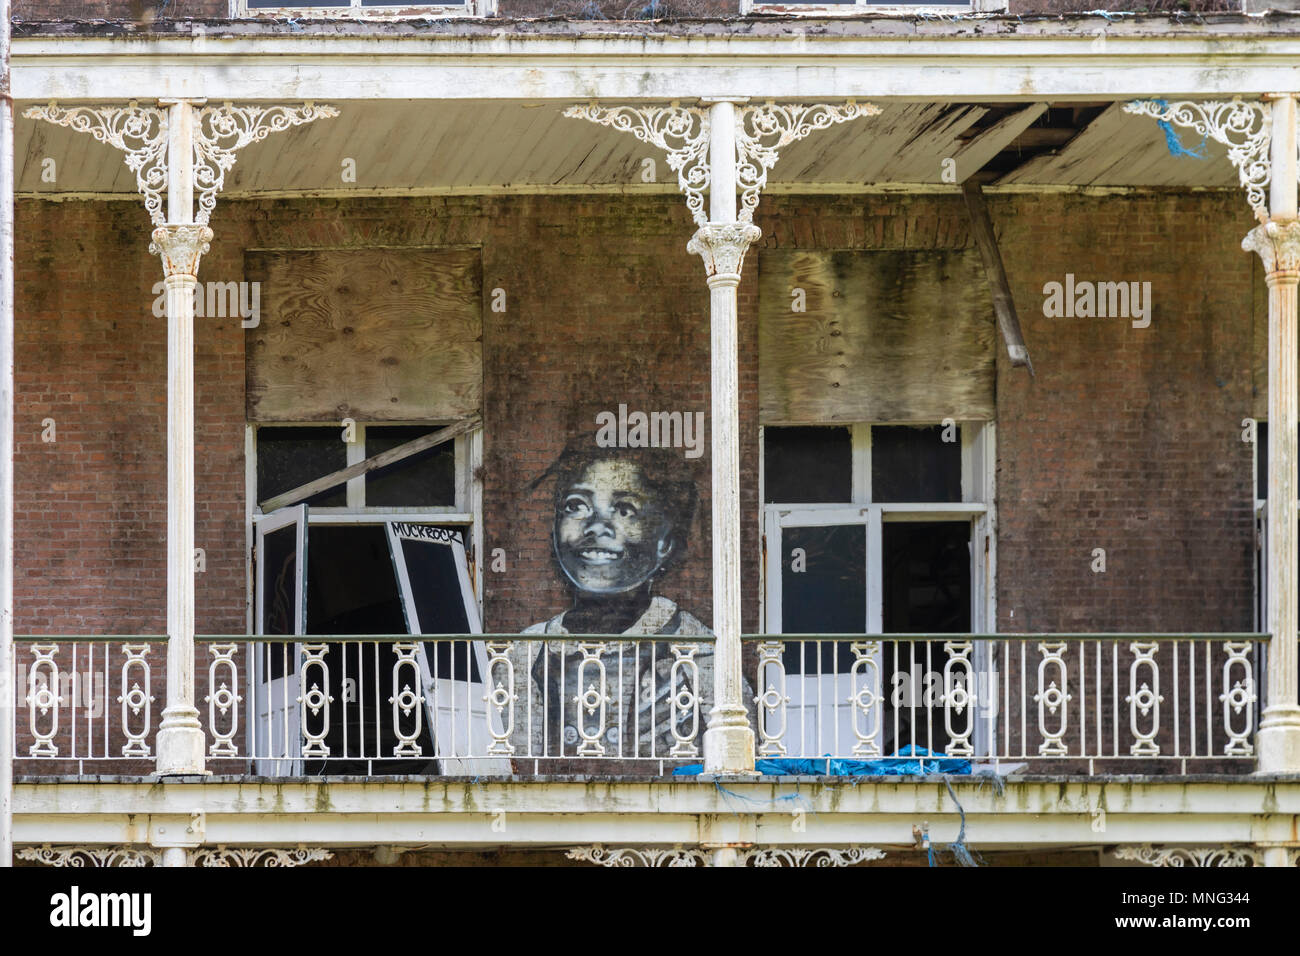 New Orleans, Louisiana - Die alte Schule, die dem Heiligen Kreuz frei Seit dem Hurrikan Katrina beschädigt wurde. Stockfoto